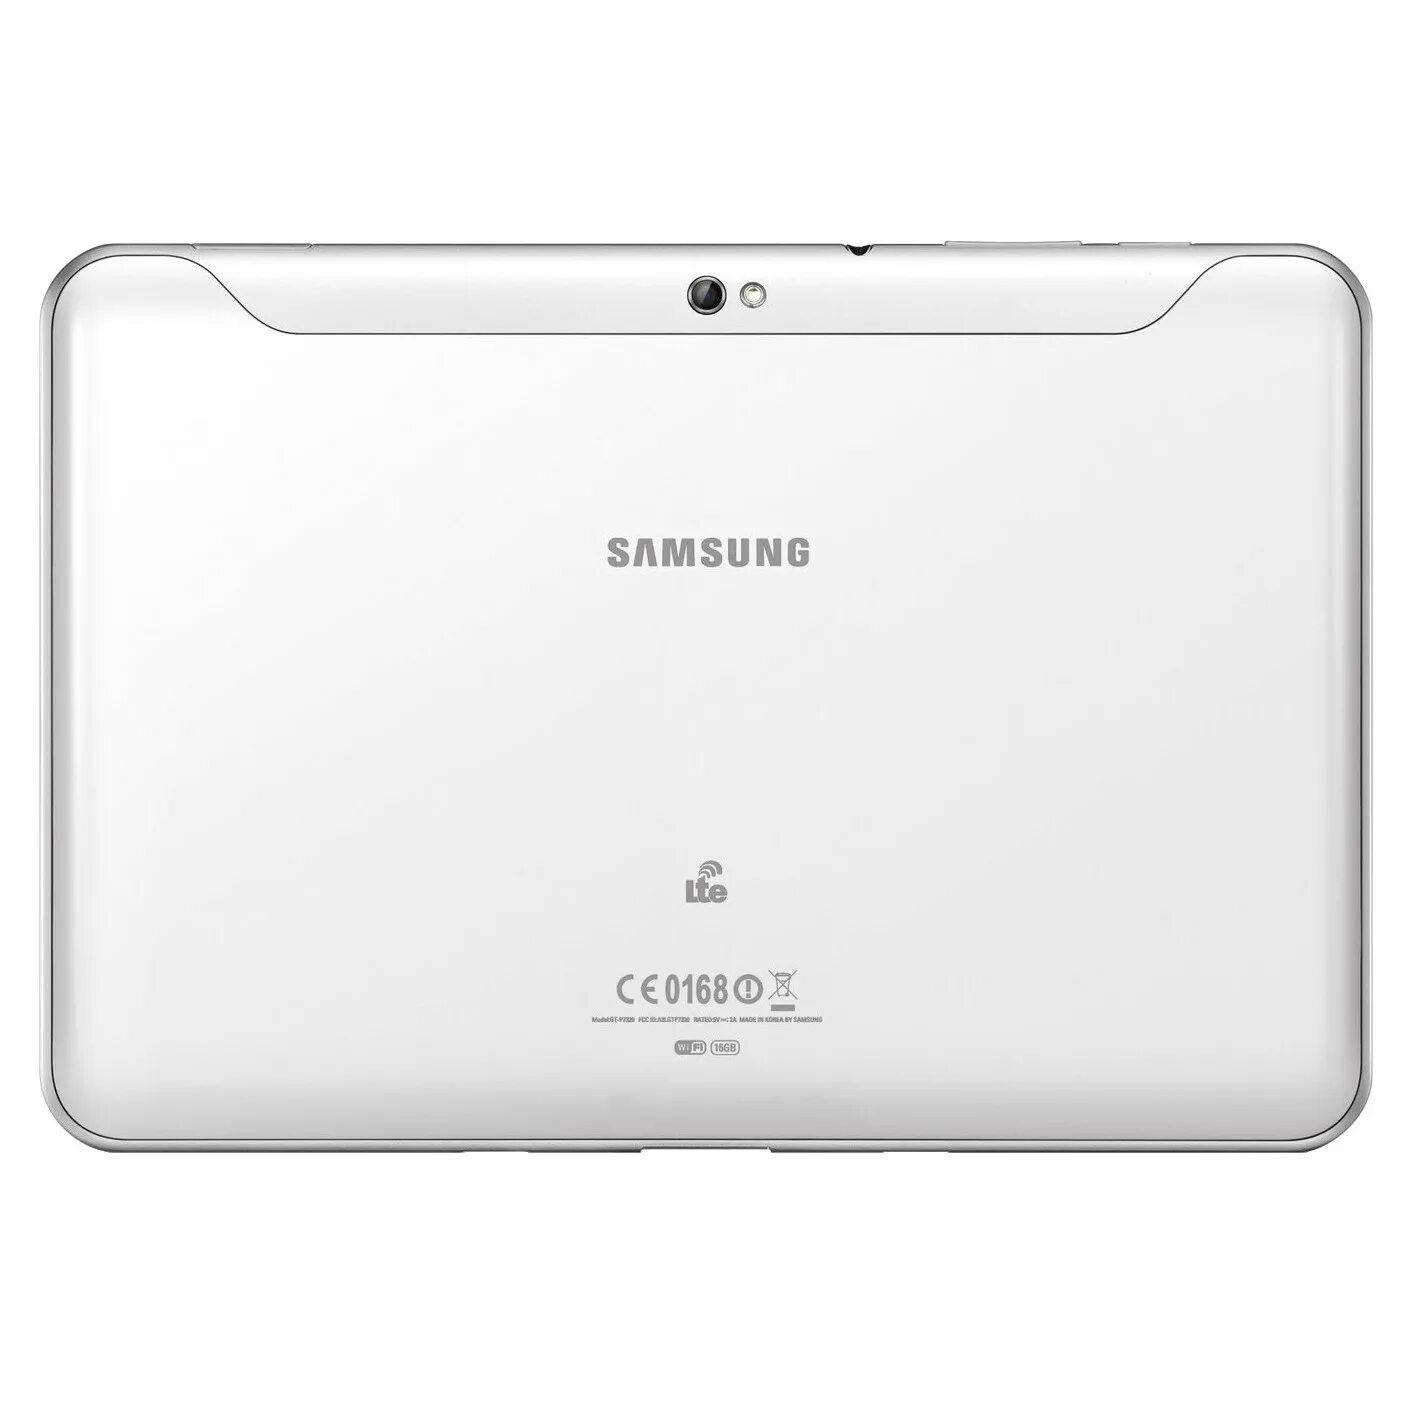 Самсунг планшет картой. Samsung Galaxy Tab 8.9 p7320 LTE. Samsung Galaxy Tab 8.9 p7300 16gb. Samsung Galaxy Tab 8.9 gt-p7300. Планшет Samsung Galaxy Tab 8.9 p7320 LTE 16gb.